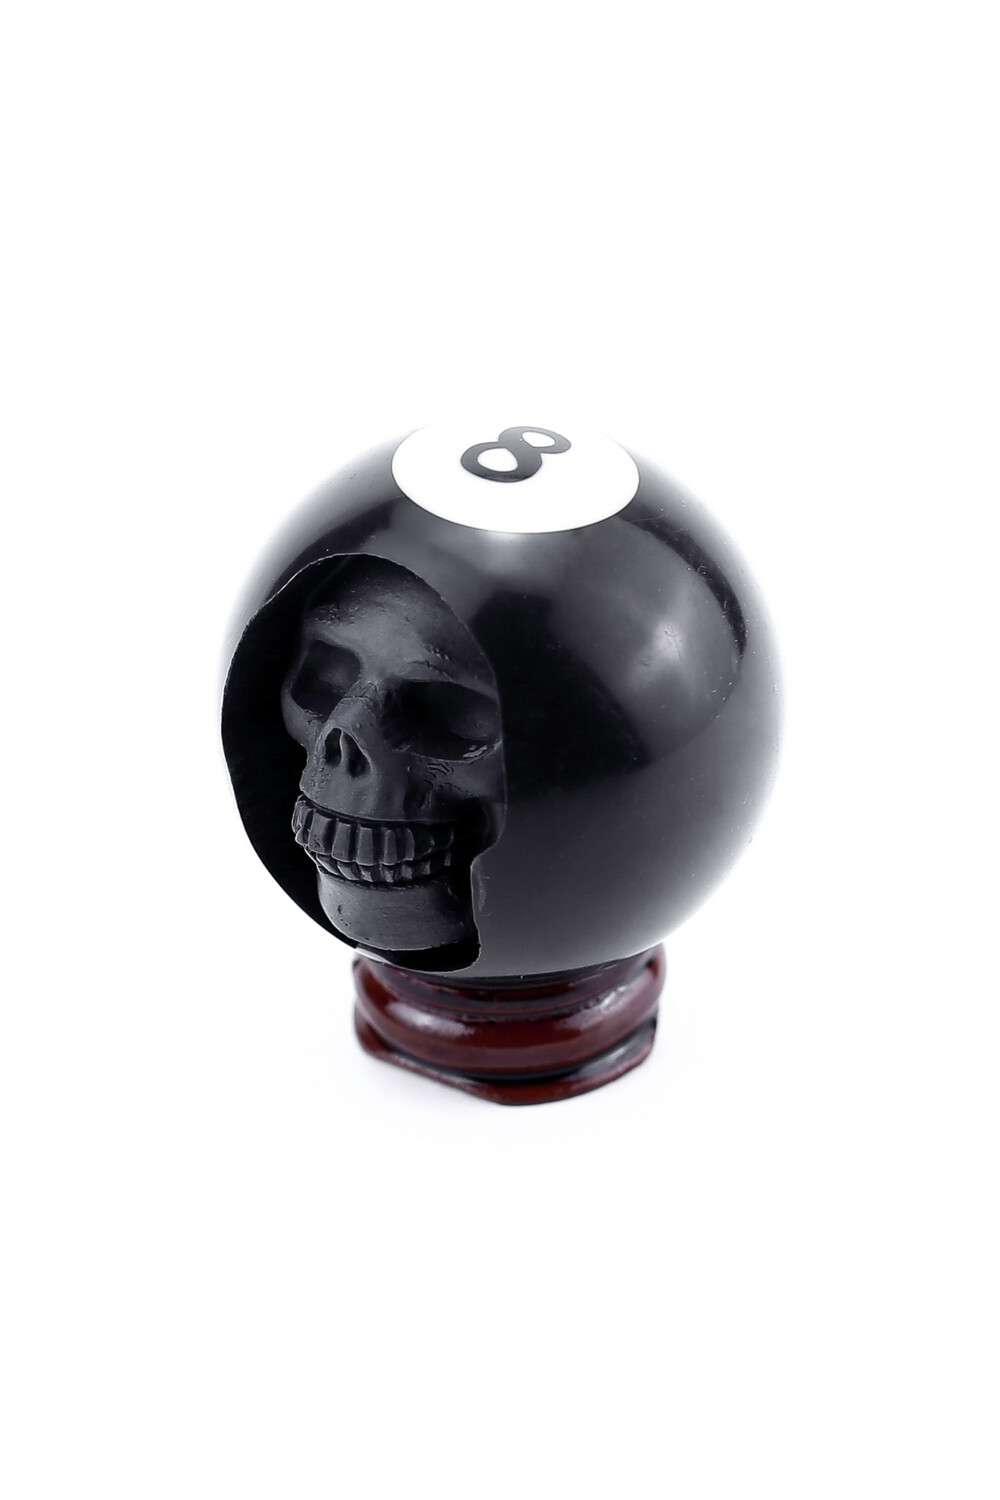 Souvenir ball "Skull 8"